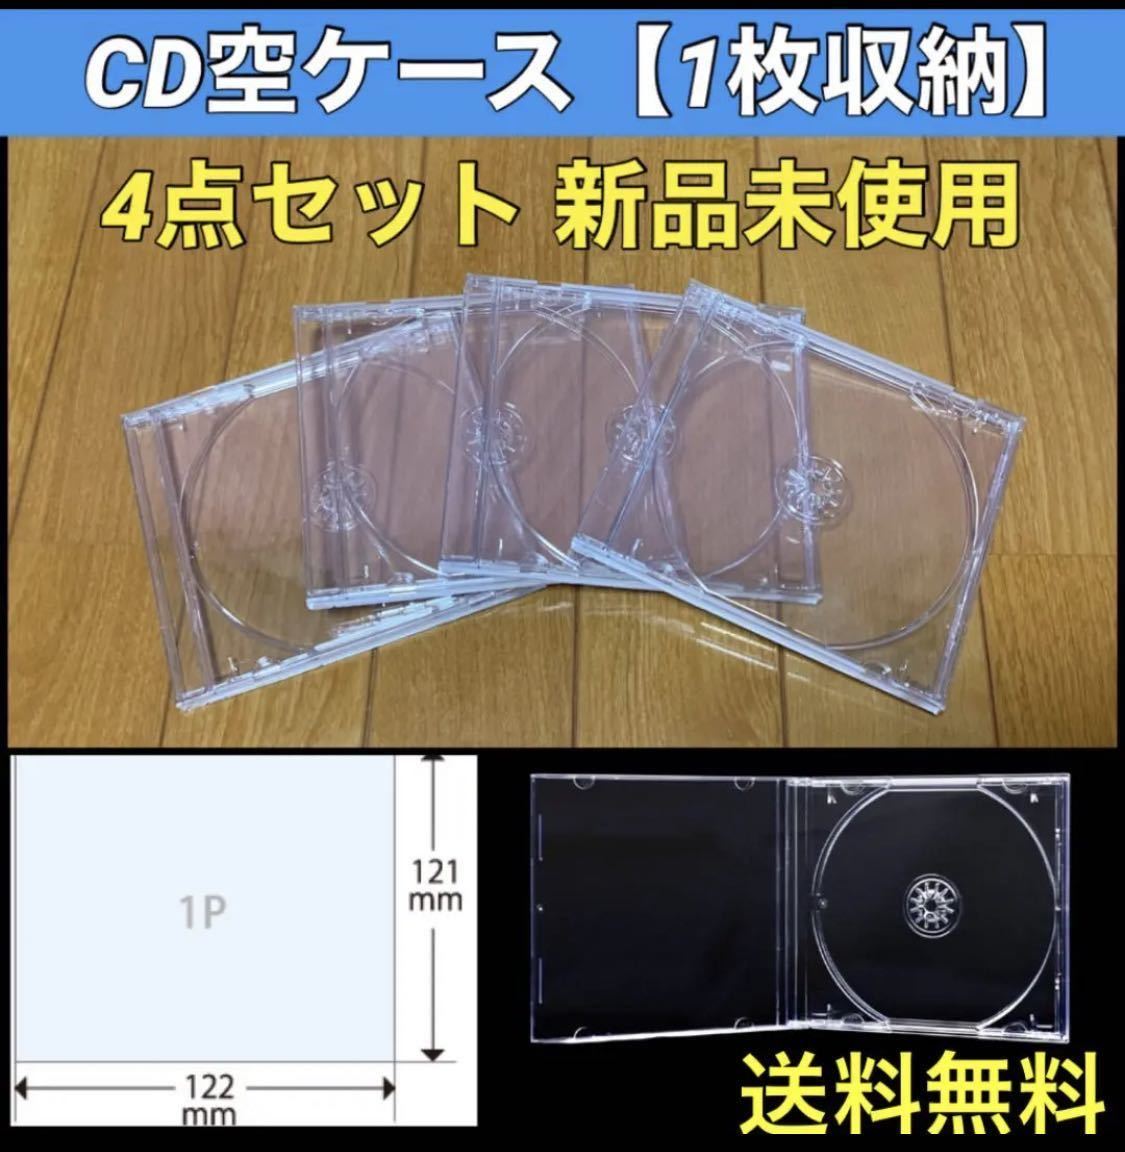 【送料無料 新品】CD 空 ケース 4枚 セット シングルタイプの画像1